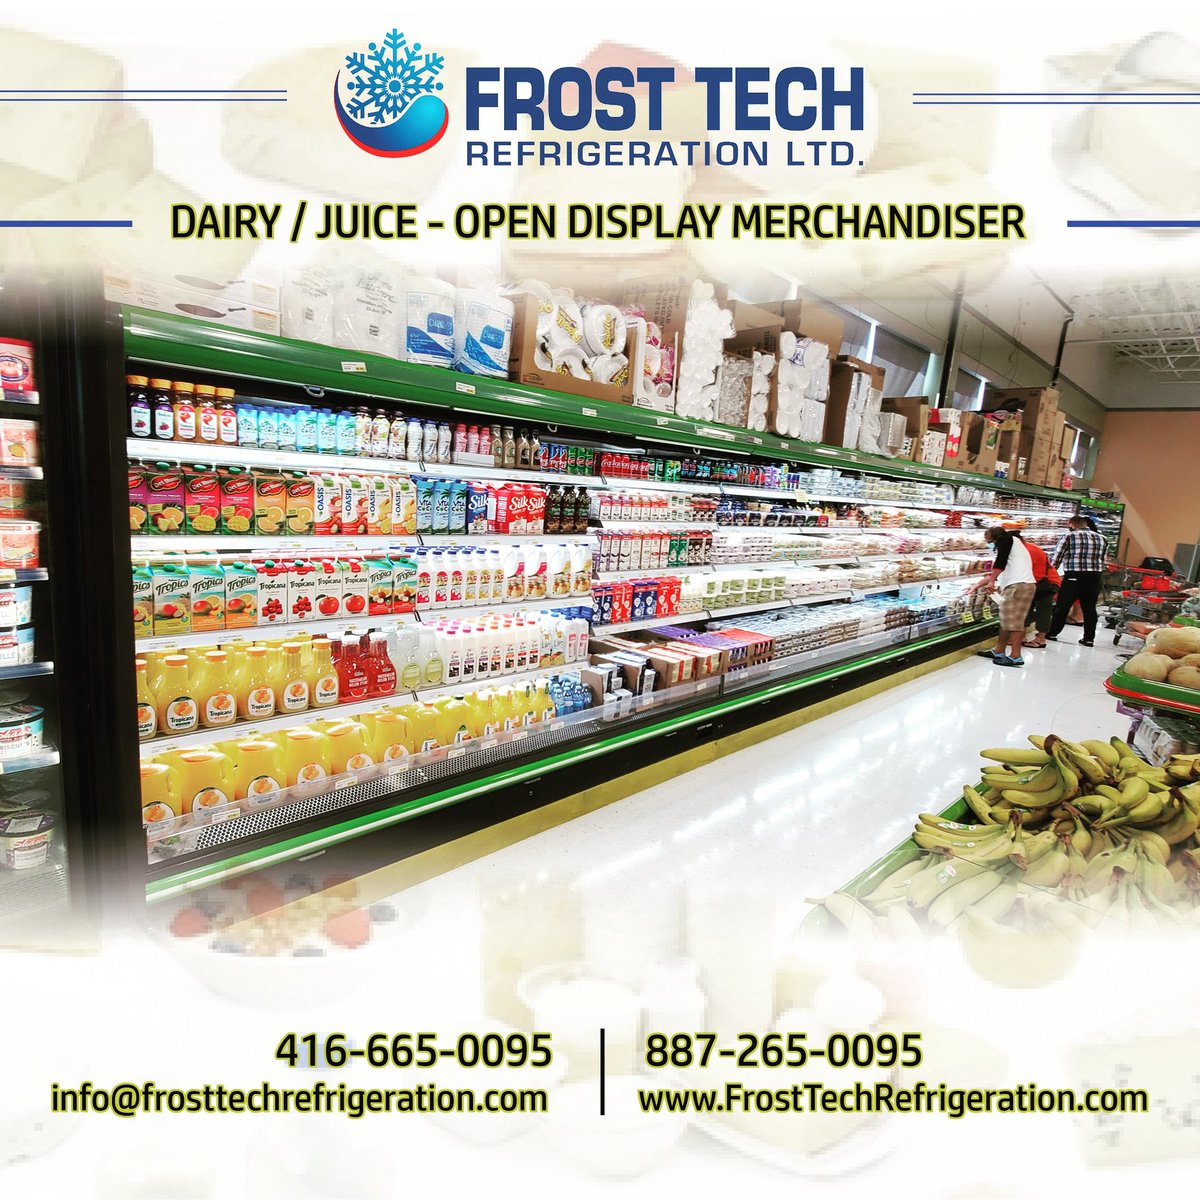 Open Merchandisers 
@FrostTechRefrig
bit.ly/2ZbZyly
#openmerchandisers #opendisplaycooler #refrigeratedcabinets #supermarket #displaycoolers